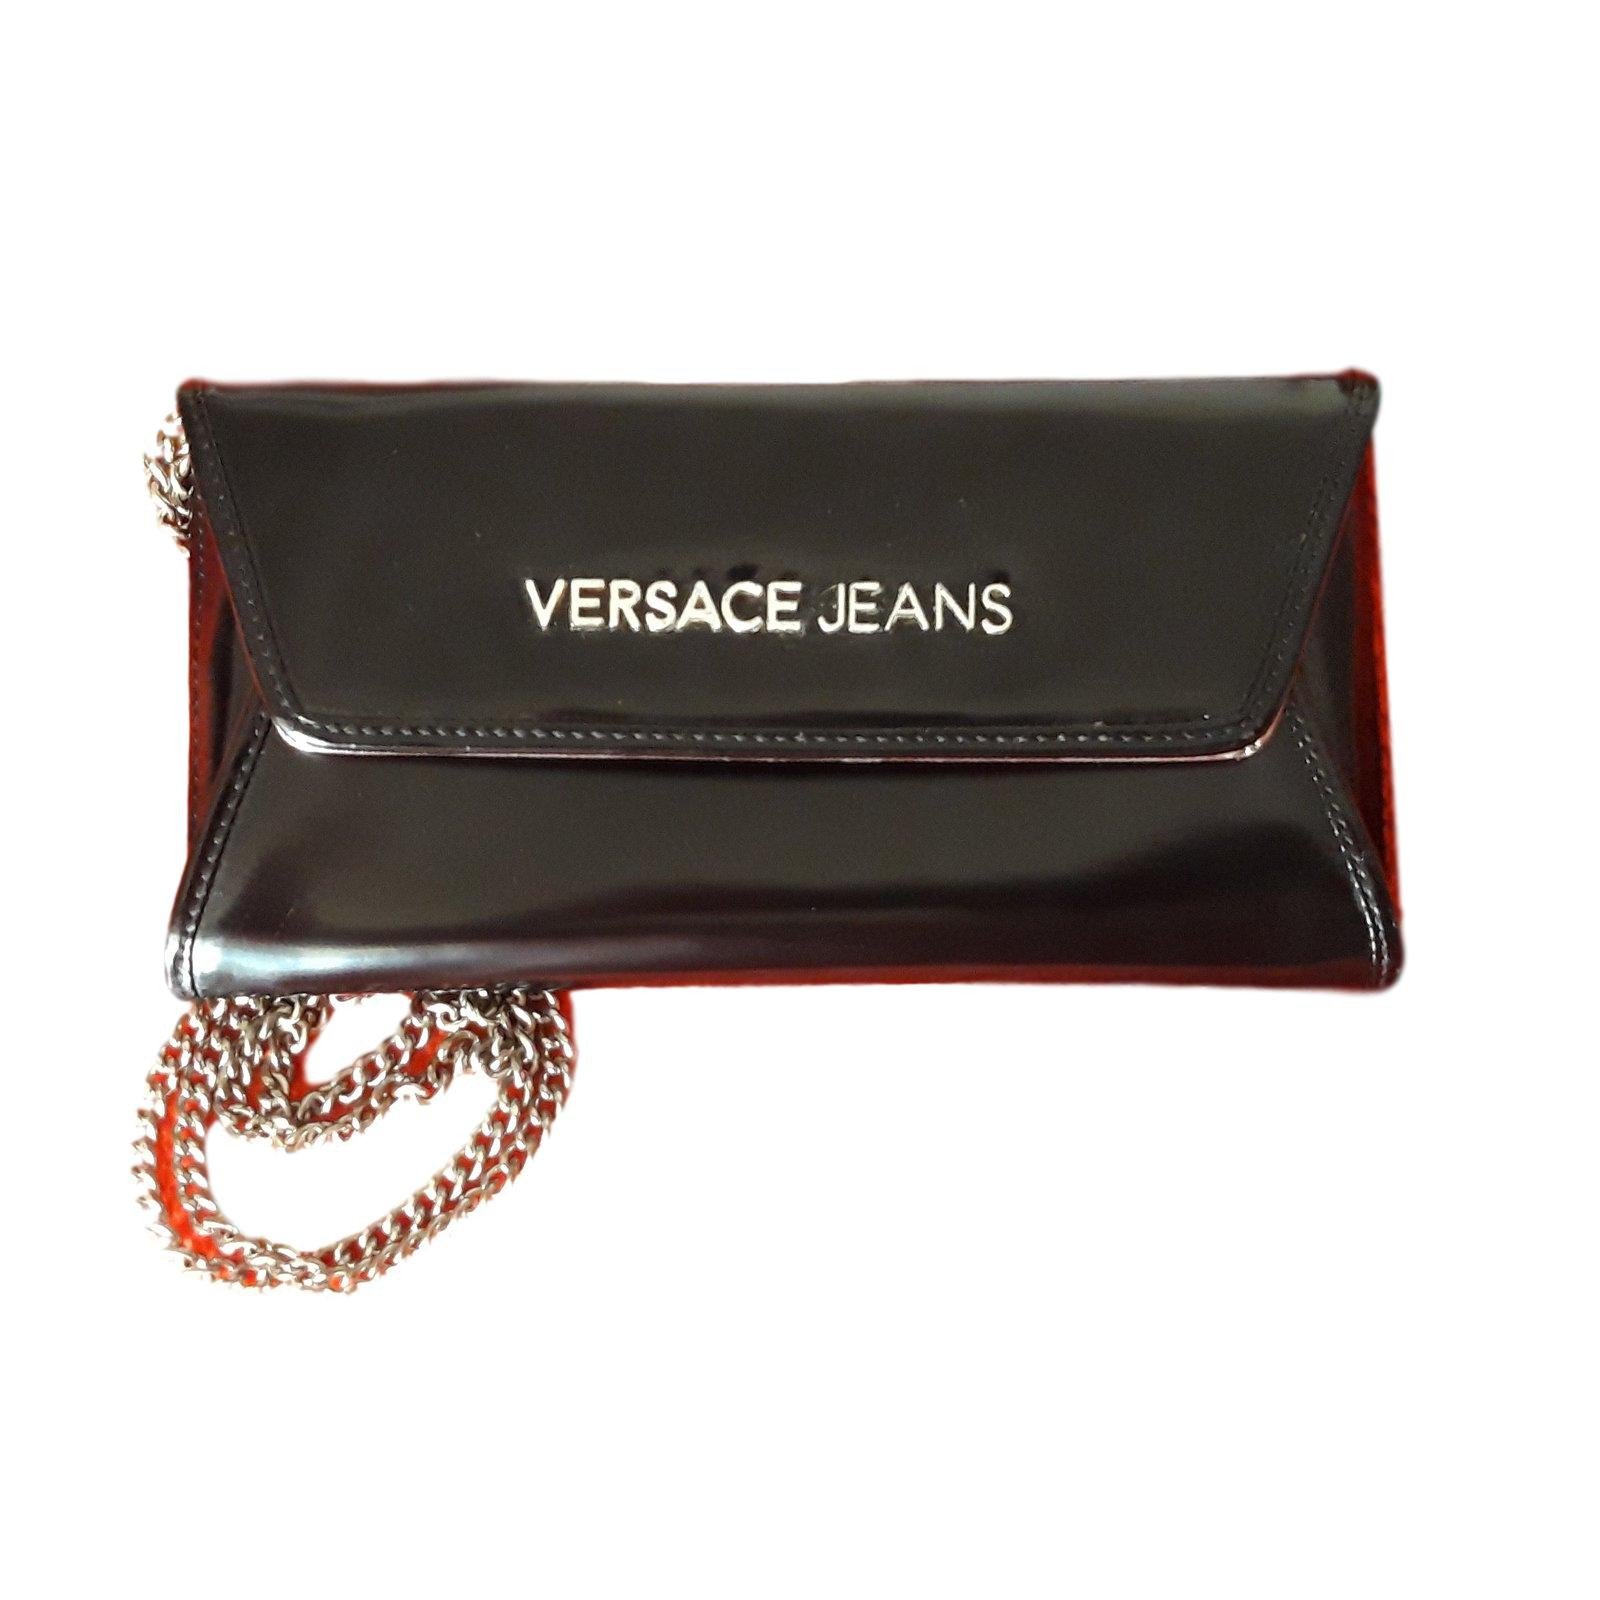 versace clutch bag